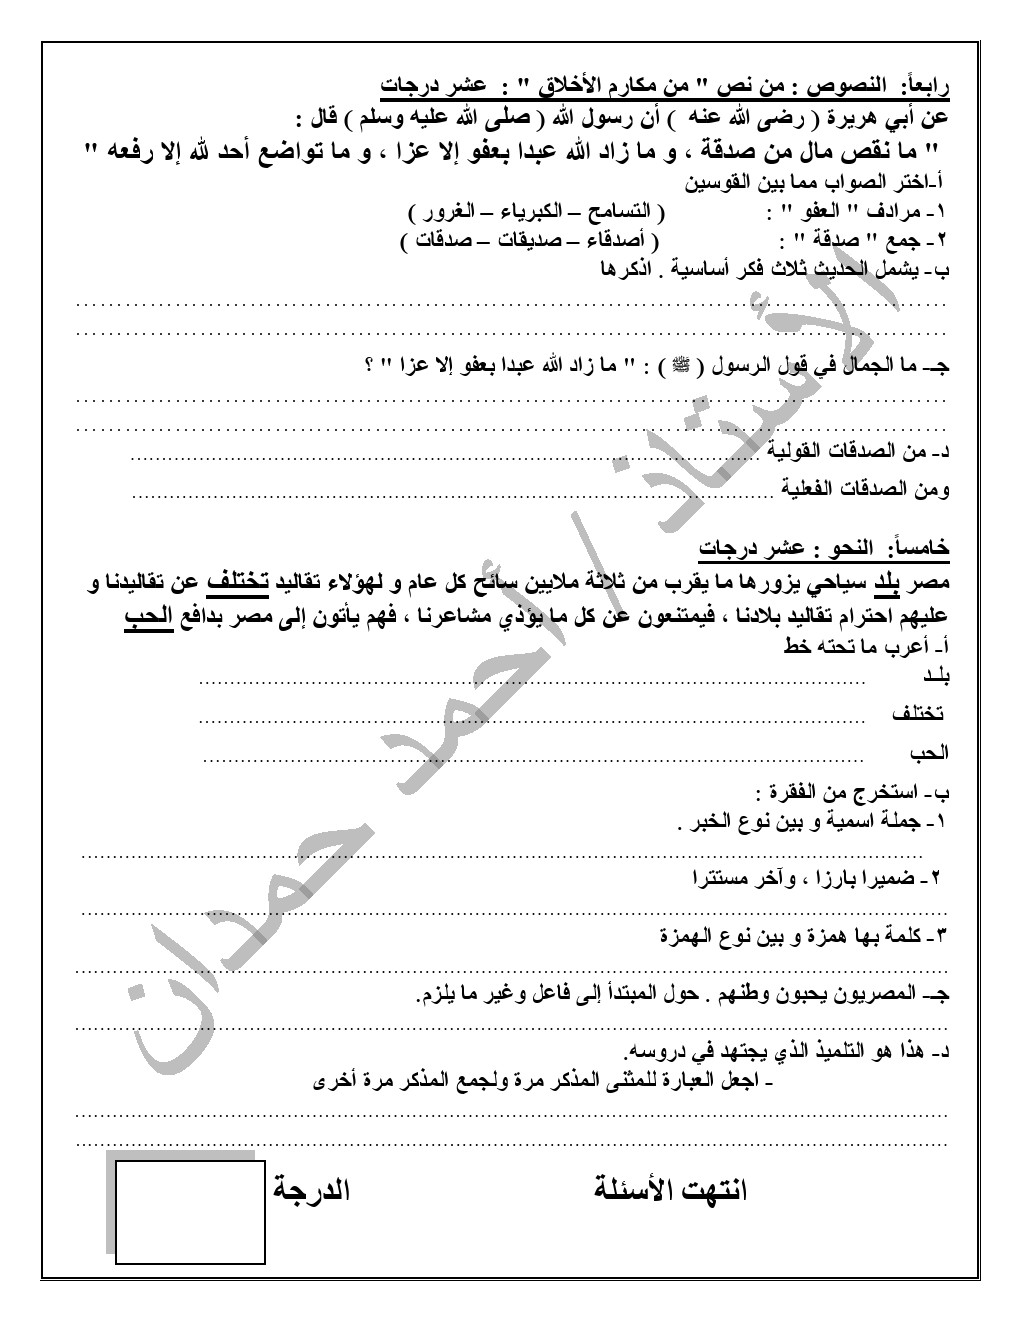 اختبار لغة عربية للصف الأول الإعدادي ترم أول شهر اكتوبر أ. أحمد حمدان 4513